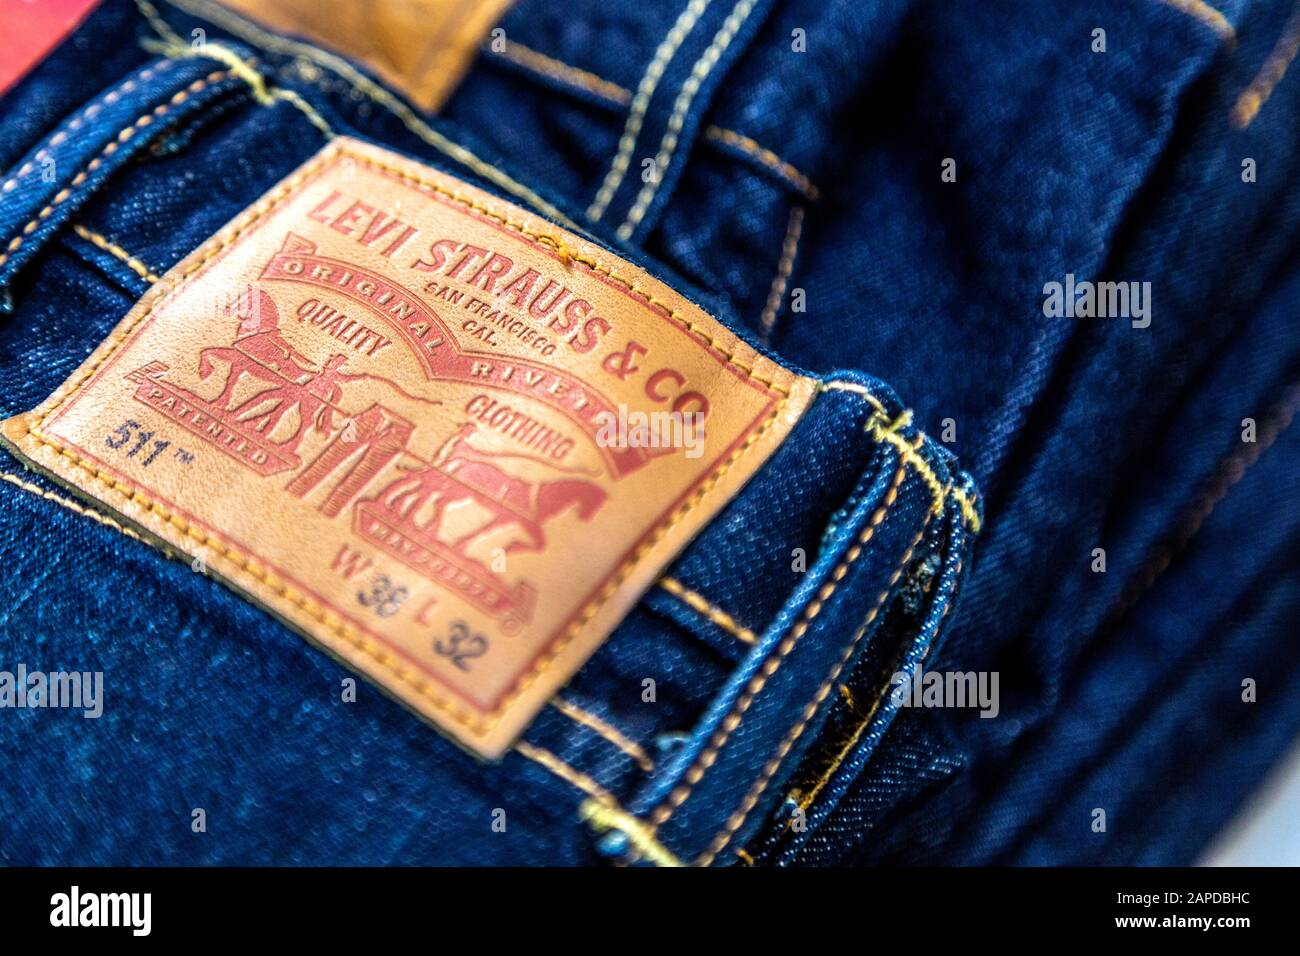 jeans e imágenes alta resolución Alamy